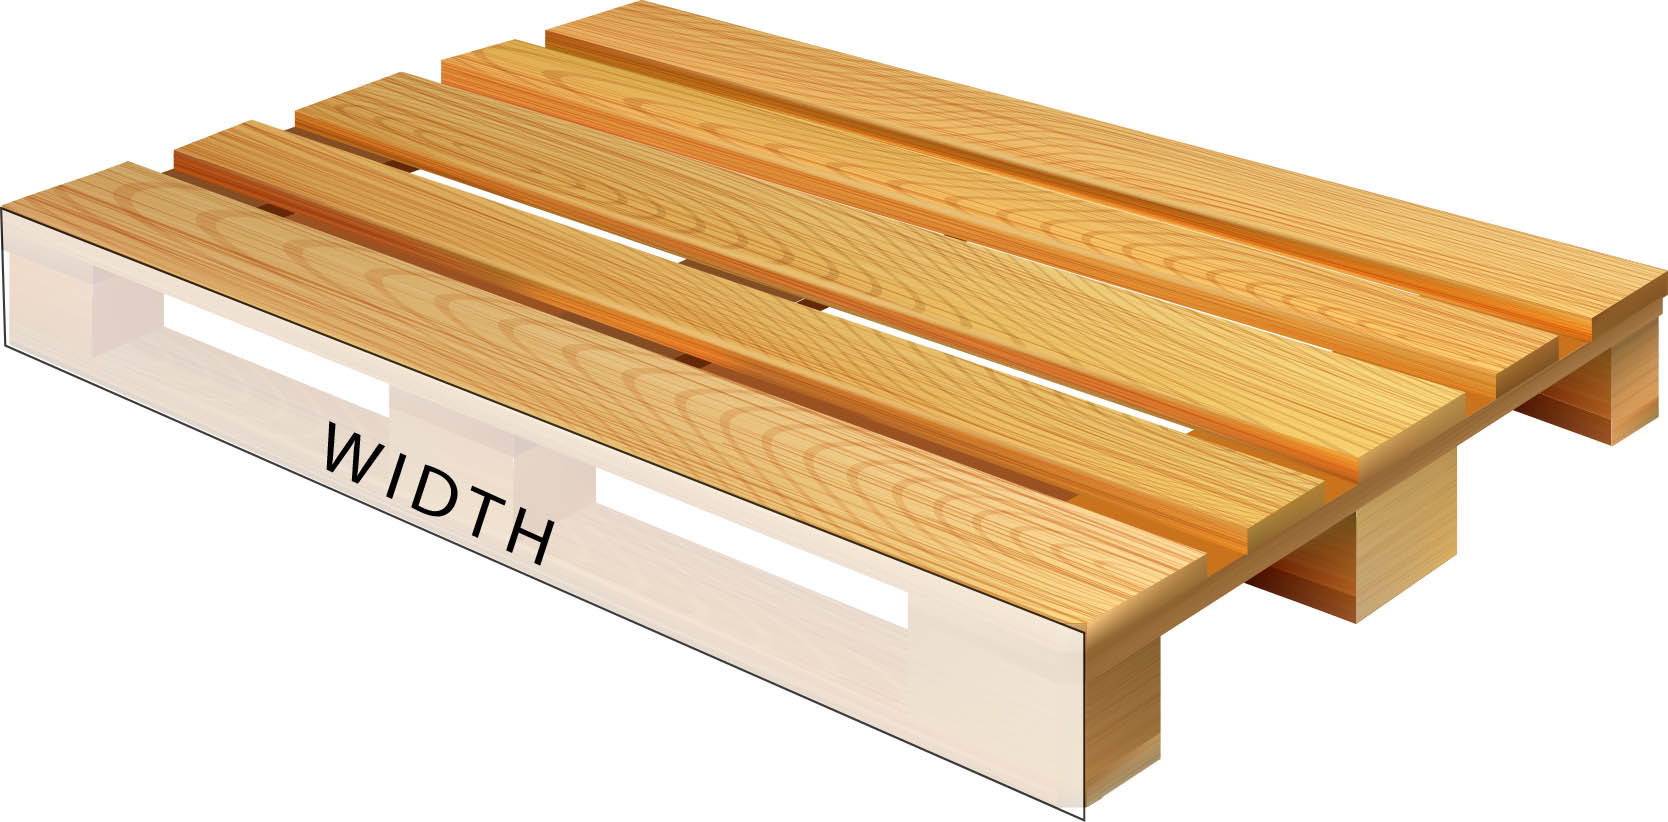 wood pallet width